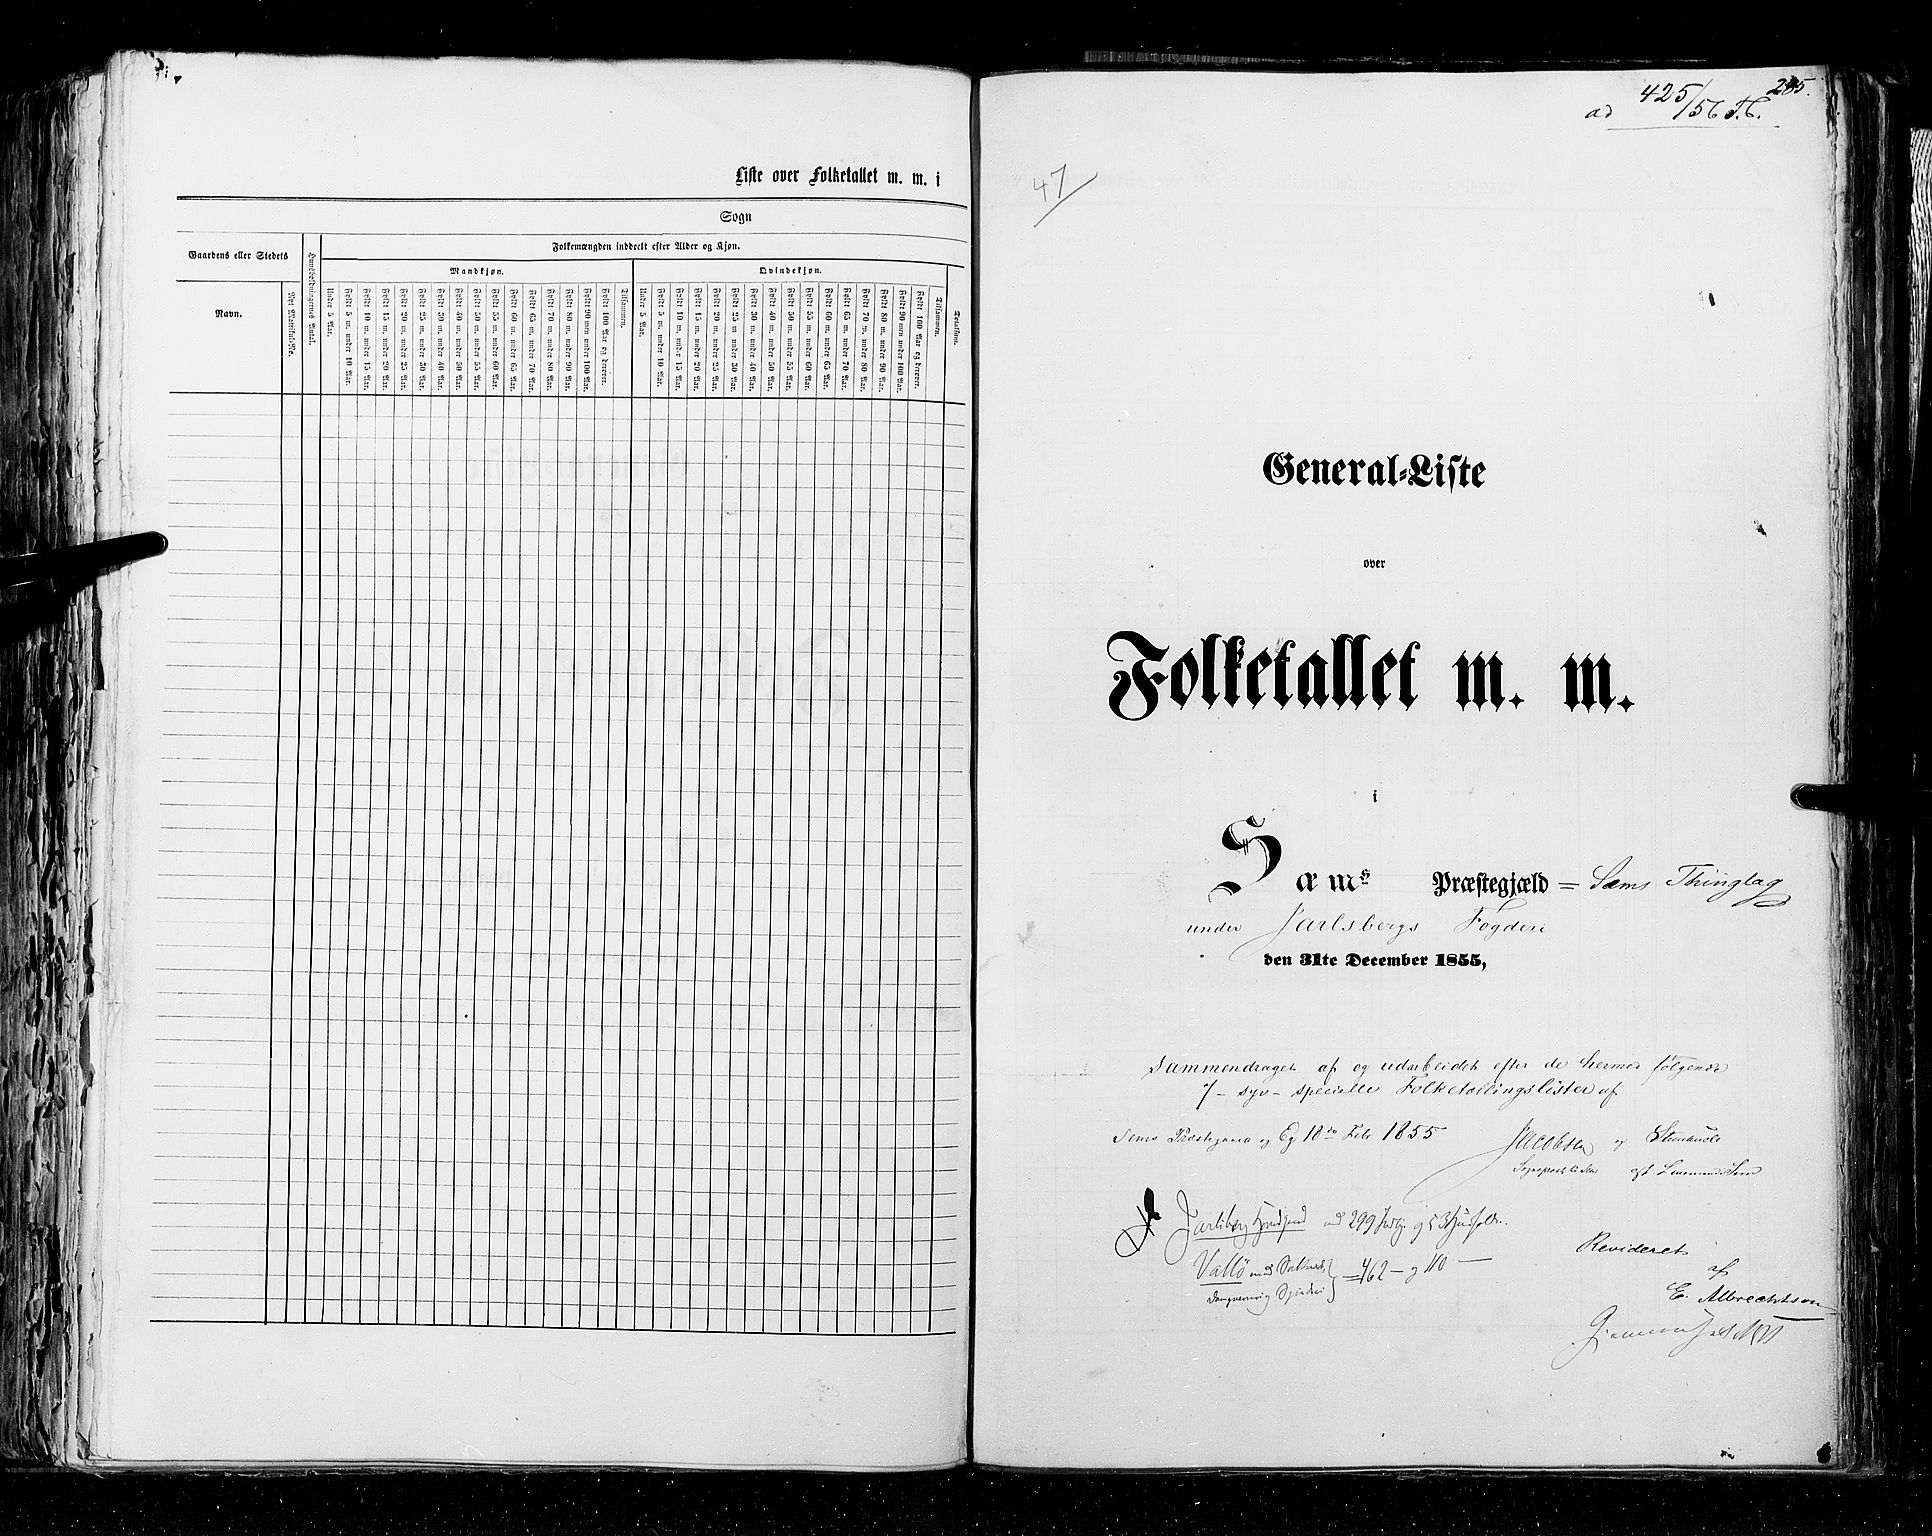 RA, Folketellingen 1855, bind 2: Kristians amt, Buskerud amt og Jarlsberg og Larvik amt, 1855, s. 285